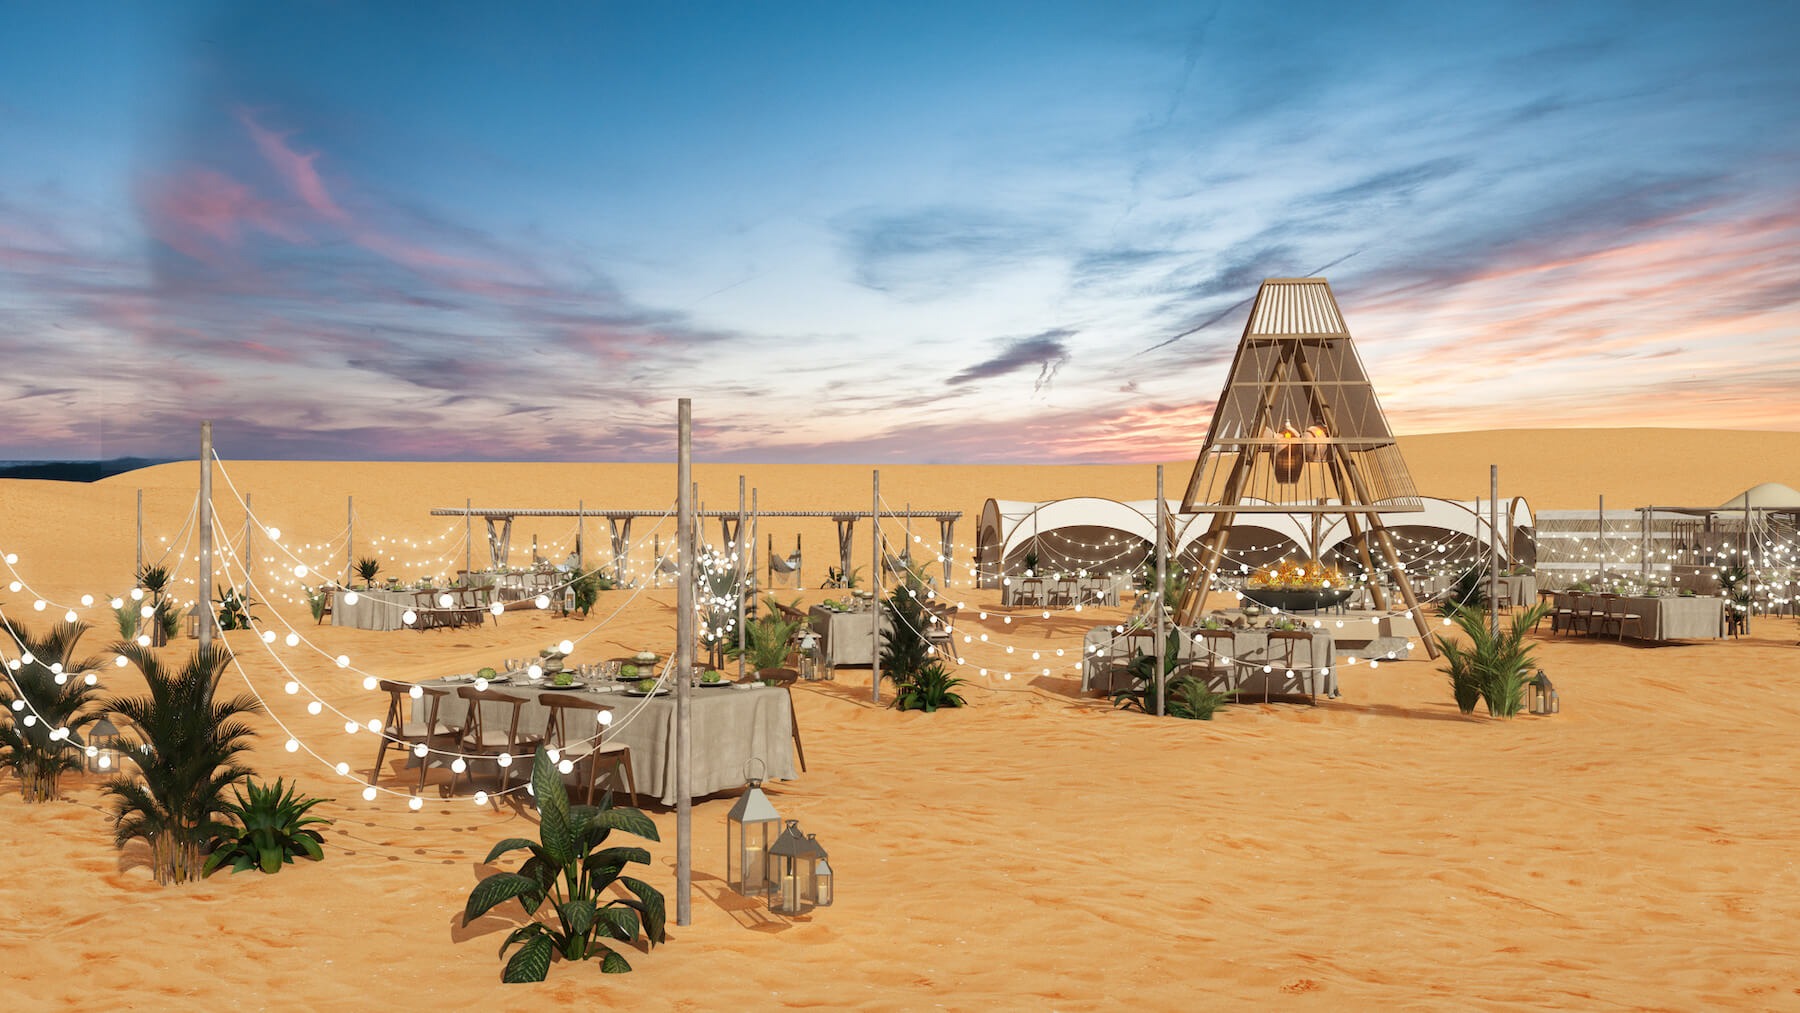 Dubai camp. Sonata Camp Дубай. Sonara Camp Dubai. Sonata Camp Dubai ресторан. Пустыня Дубай ресторан сонара.